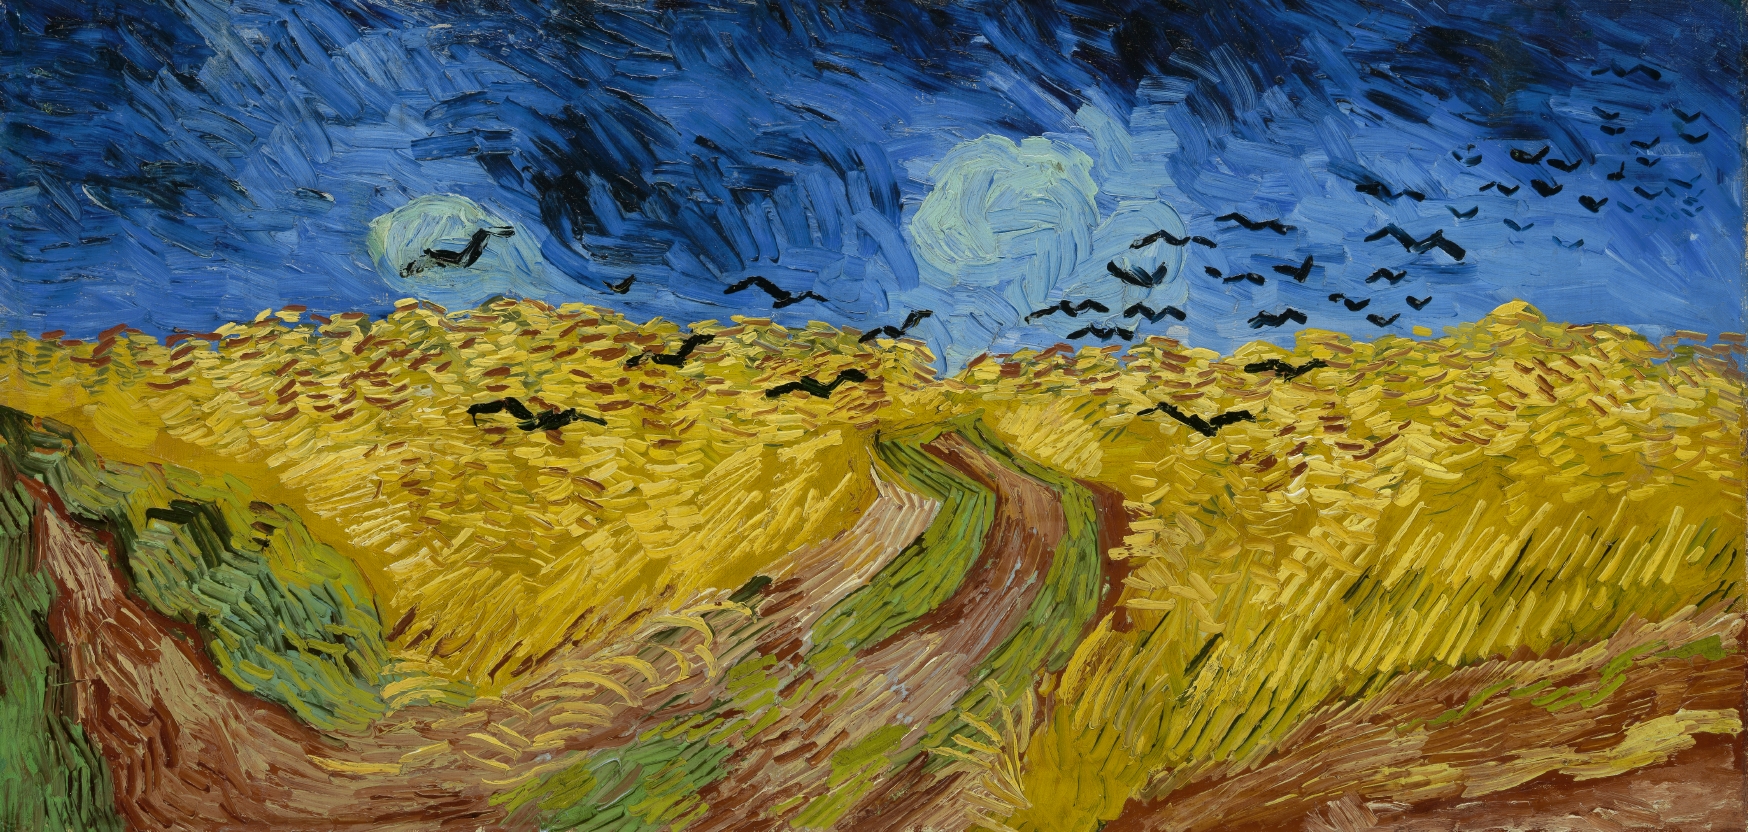 Vincent van Gogh (1853-1890), Champ de blé aux corbeaux, juillet 1890. Huile sur toile, 50,5 x 103 cm. Amsterdam, Van Gogh Museum. Photo service de presse. © Van Gogh Museum, Amsterdam (Vincent van Gogh Foundation)